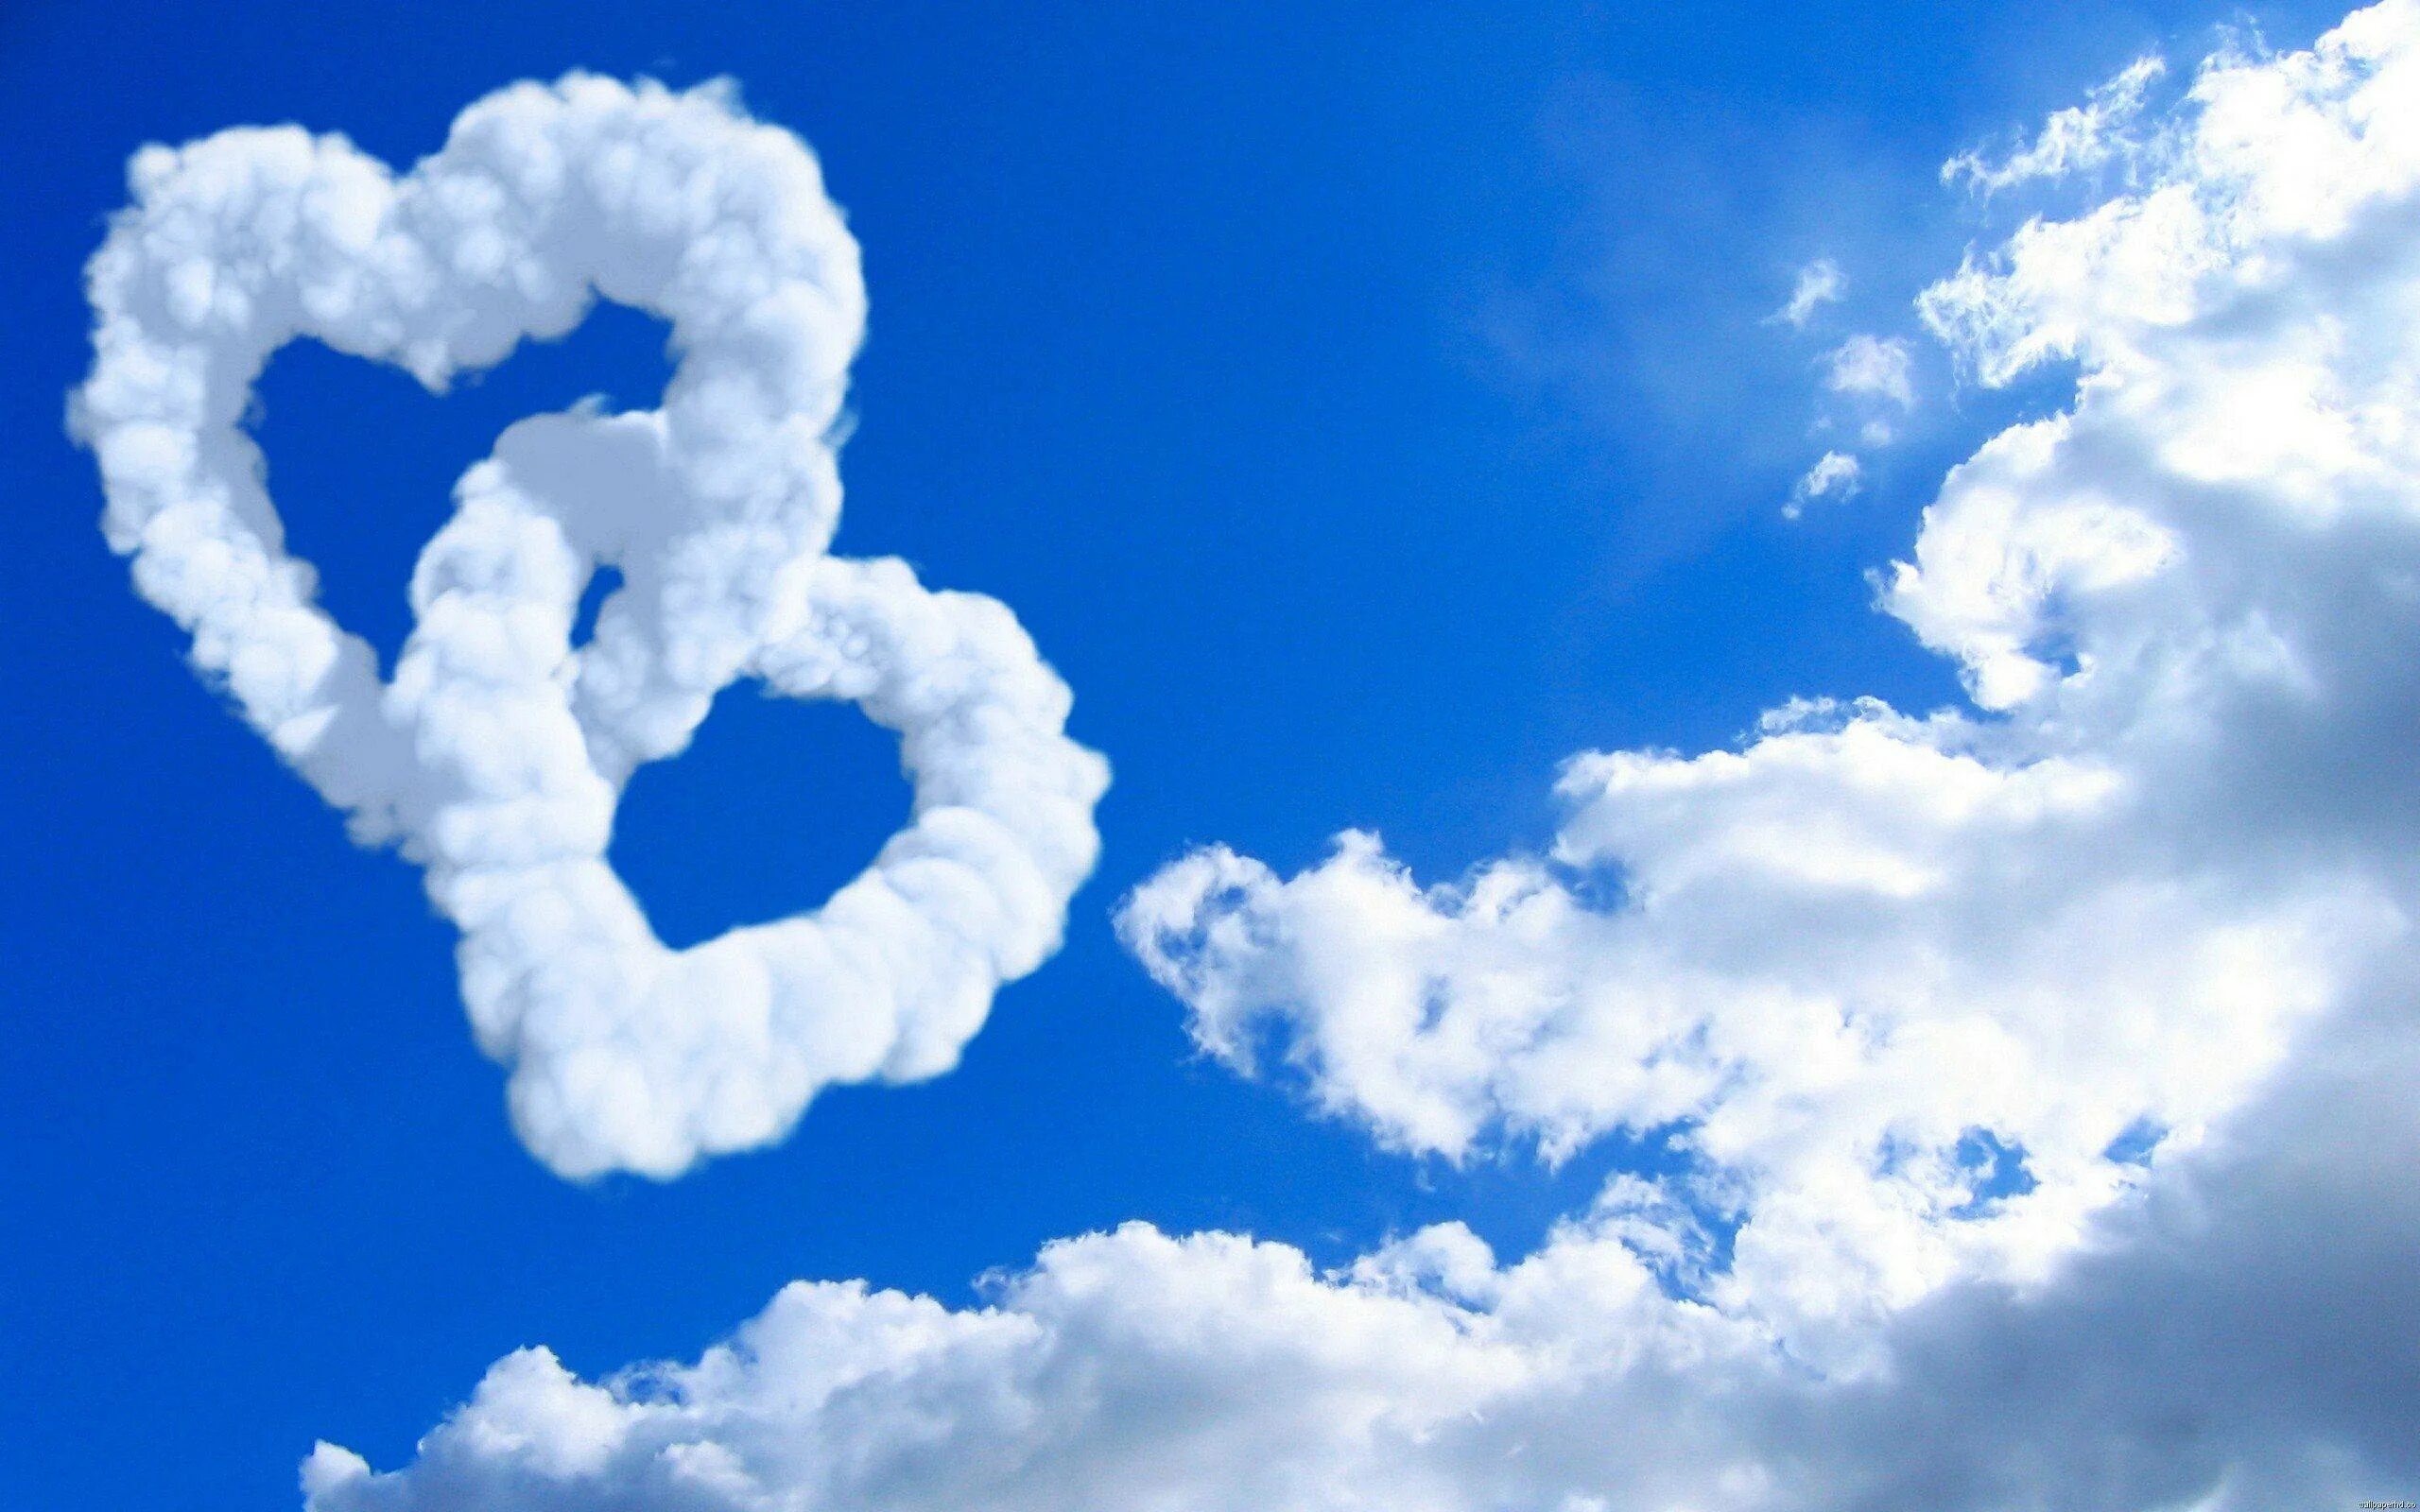 We love two. Облака. Сердечко в небе. Сердечко из облаков. Облако в виде сердечка.